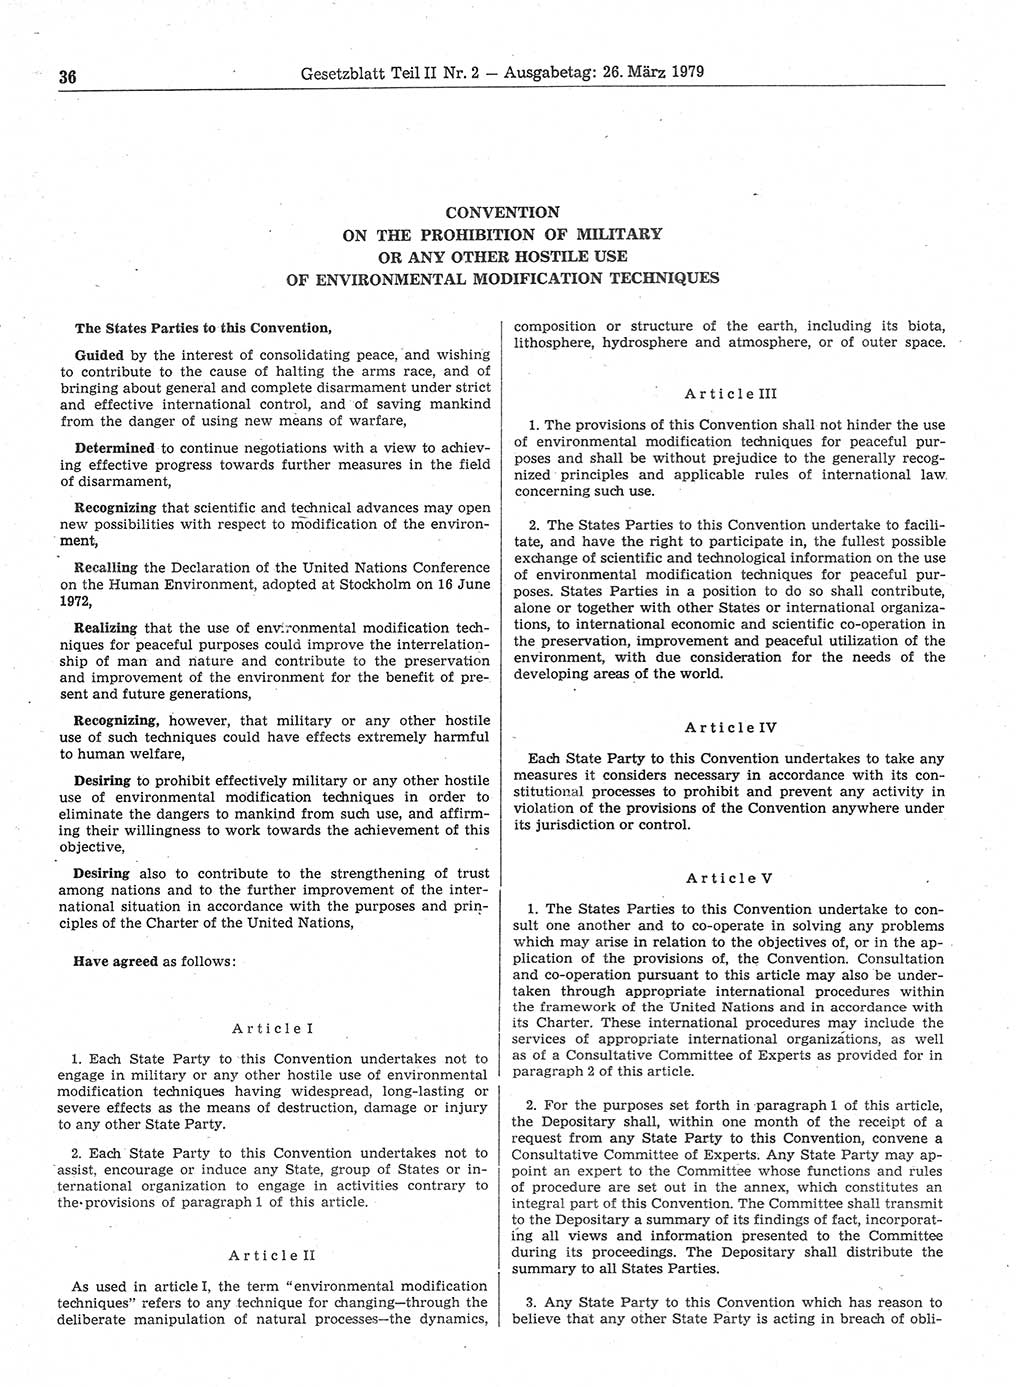 Gesetzblatt (GBl.) der Deutschen Demokratischen Republik (DDR) Teil ⅠⅠ 1979, Seite 36 (GBl. DDR ⅠⅠ 1979, S. 36)